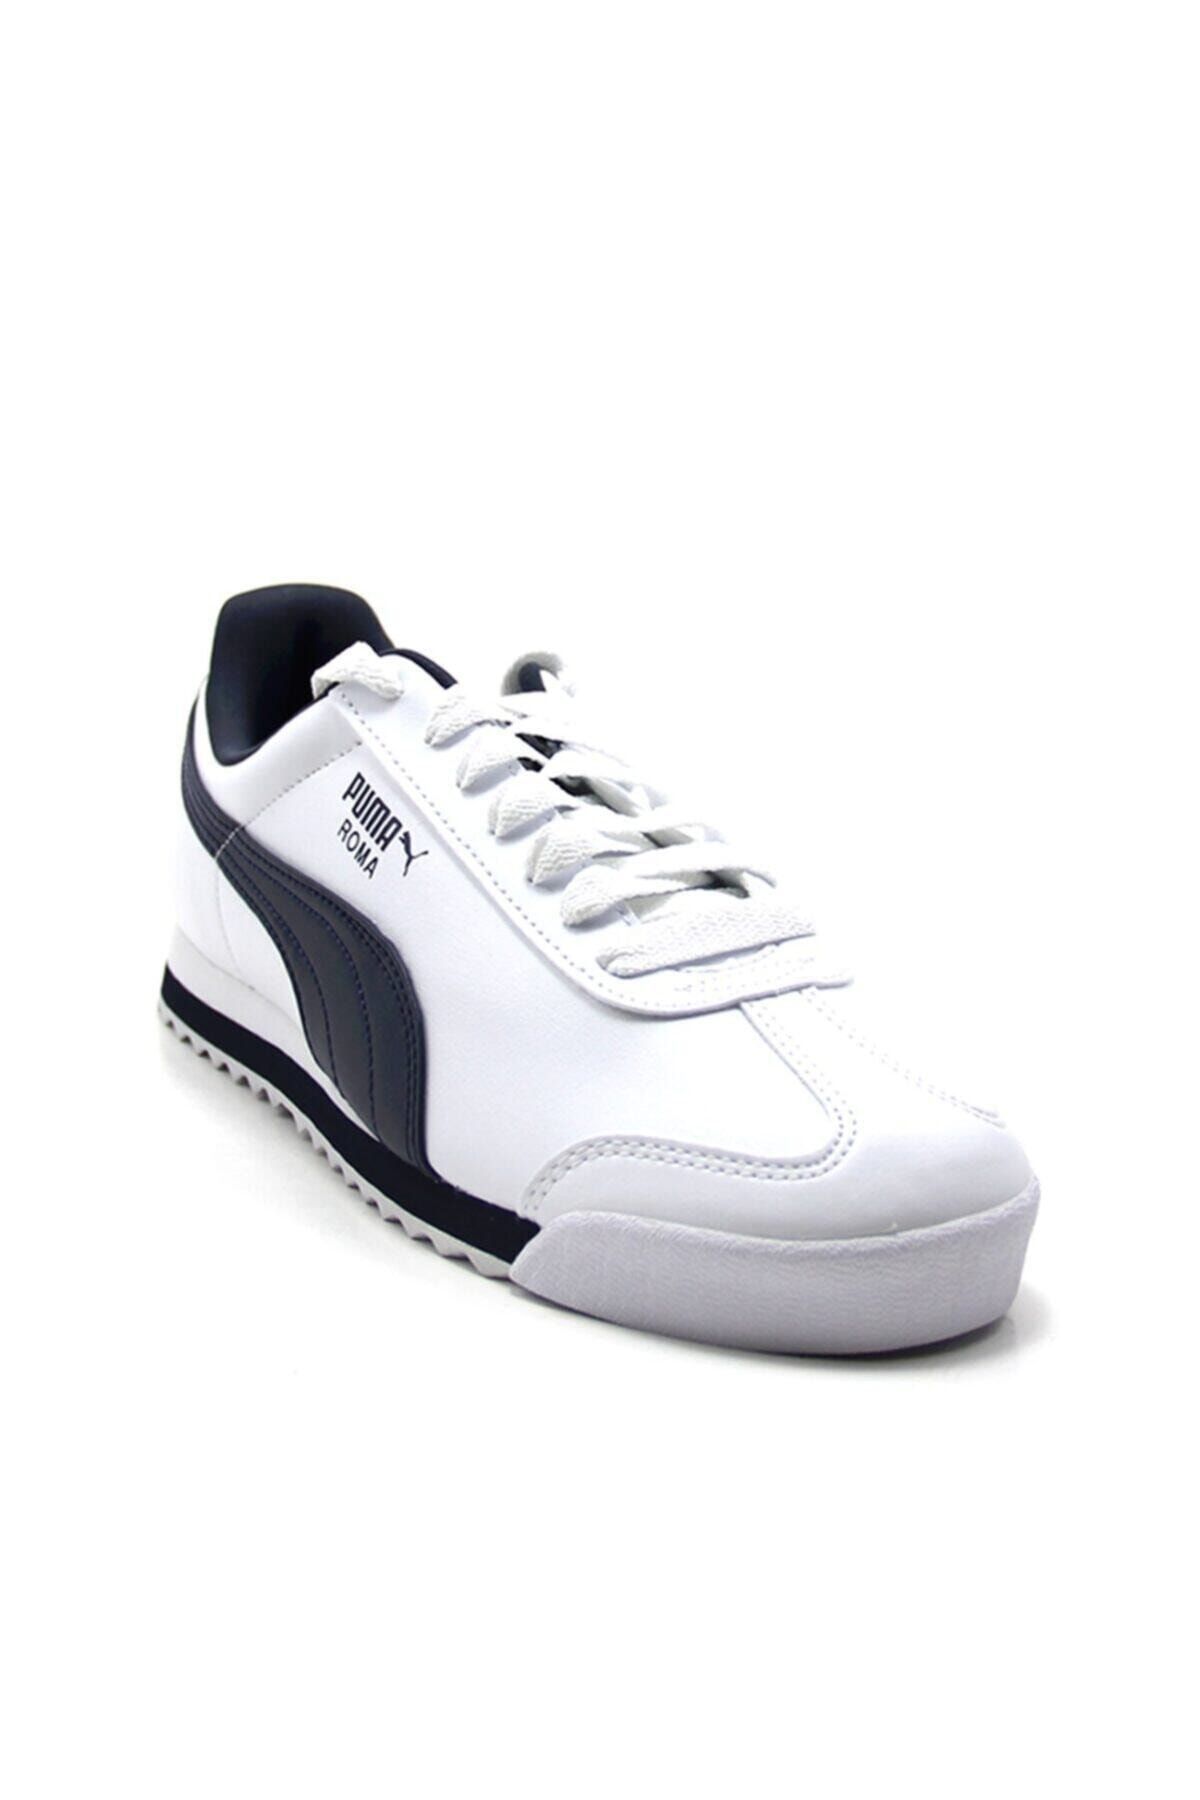 Puma 353572 12 Roma Basic Erkek Beyaz Lacivert Spor Ayakkabı Fiyatı Trendyol